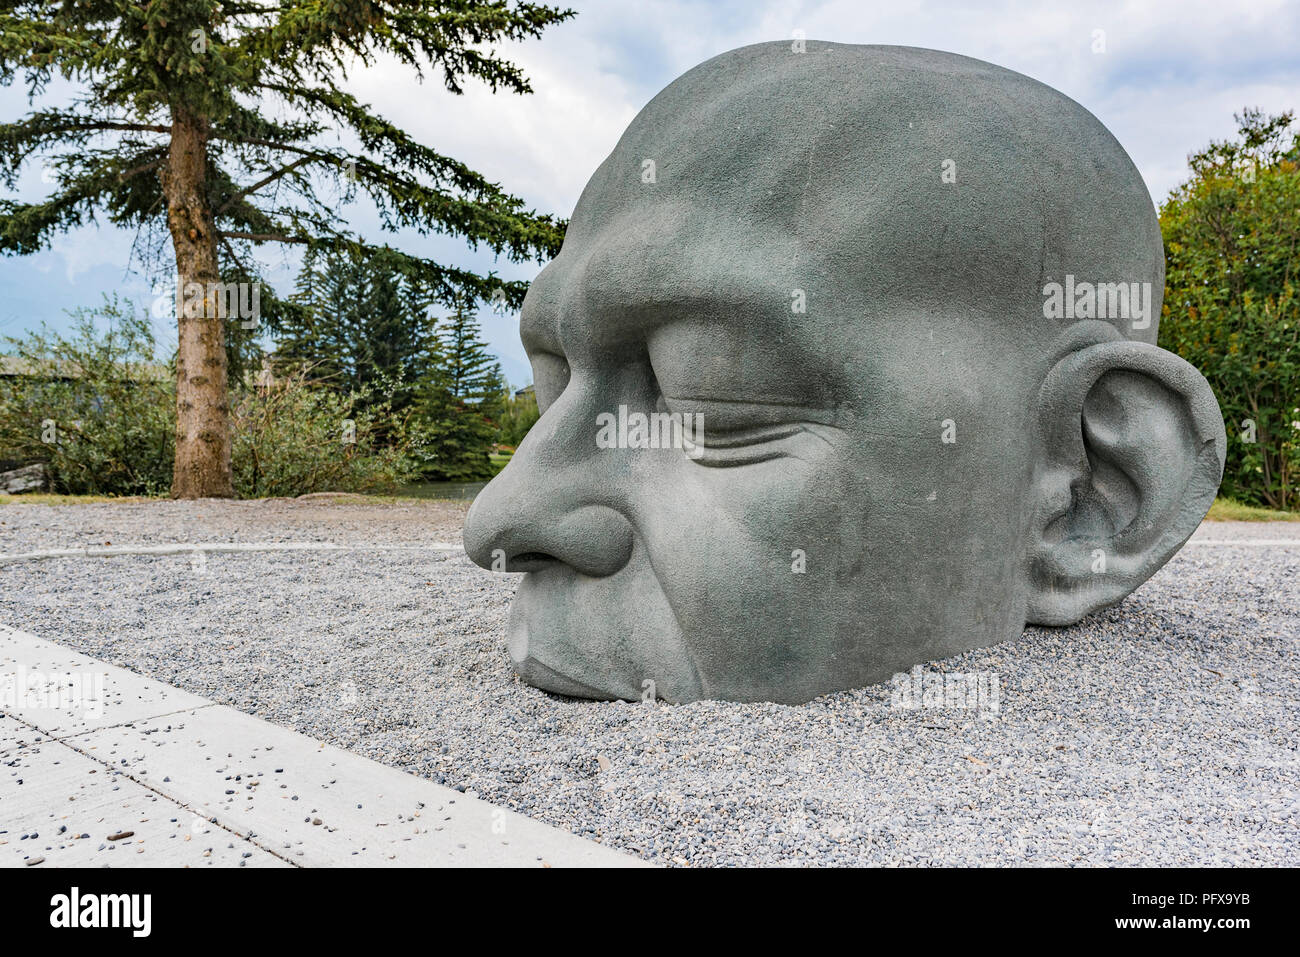 La scultura denominata testa grande, una traduzione di Gaelico Ceann Mór, una variazione di il nome della città., Canmore, Alberta, Canada. Foto Stock